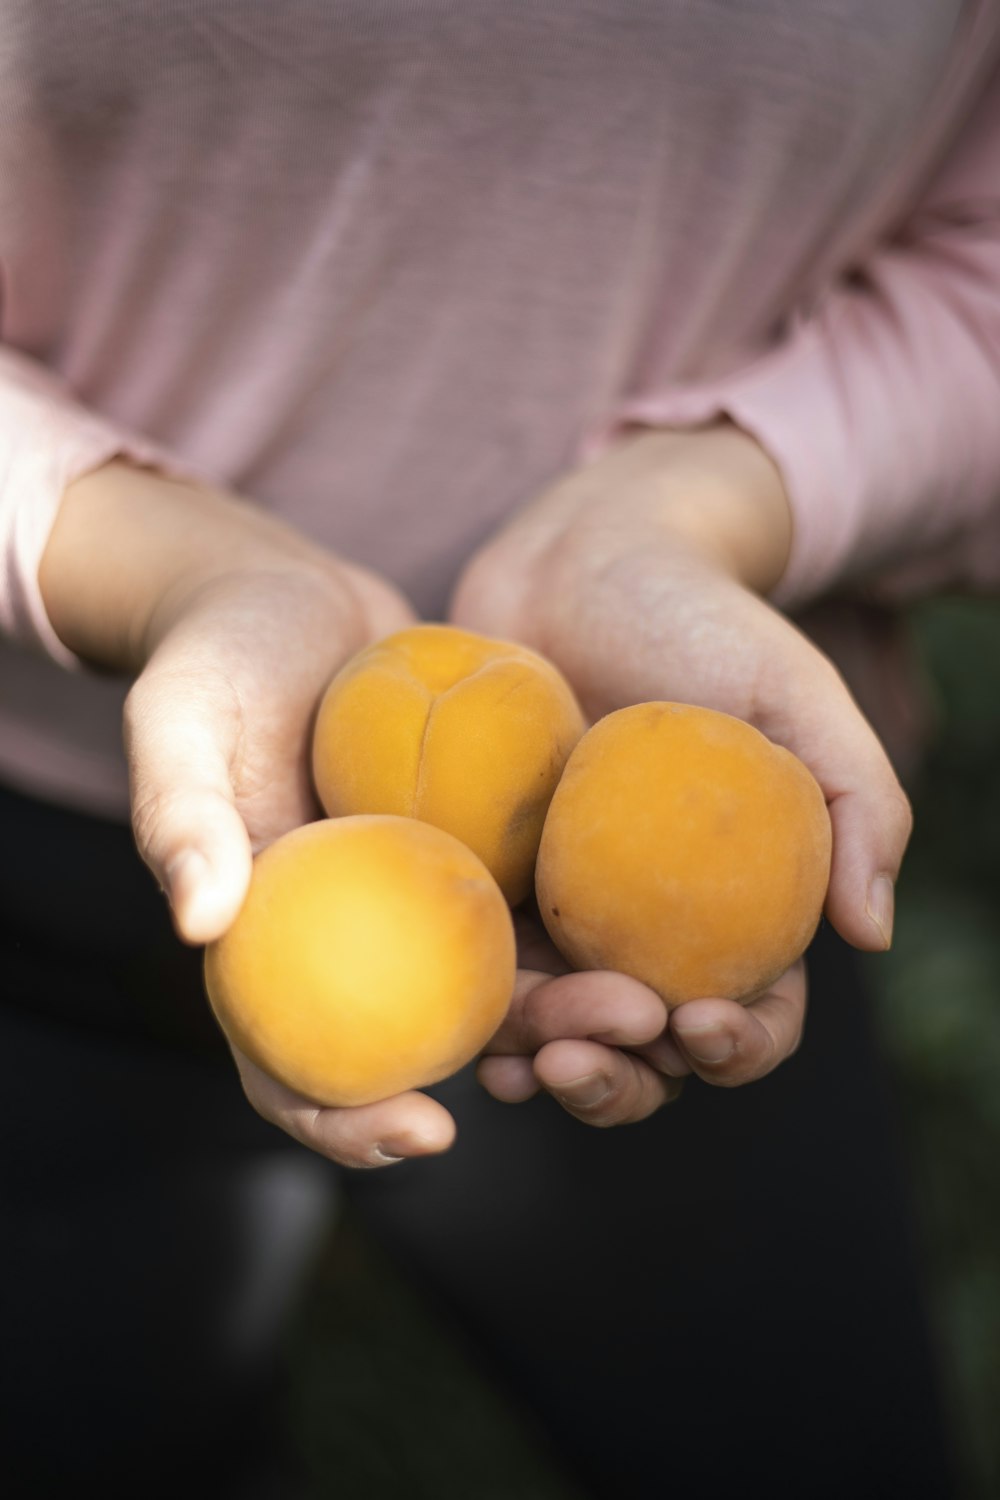 둥근 오렌지 과일 3개를 들고 있는 사람